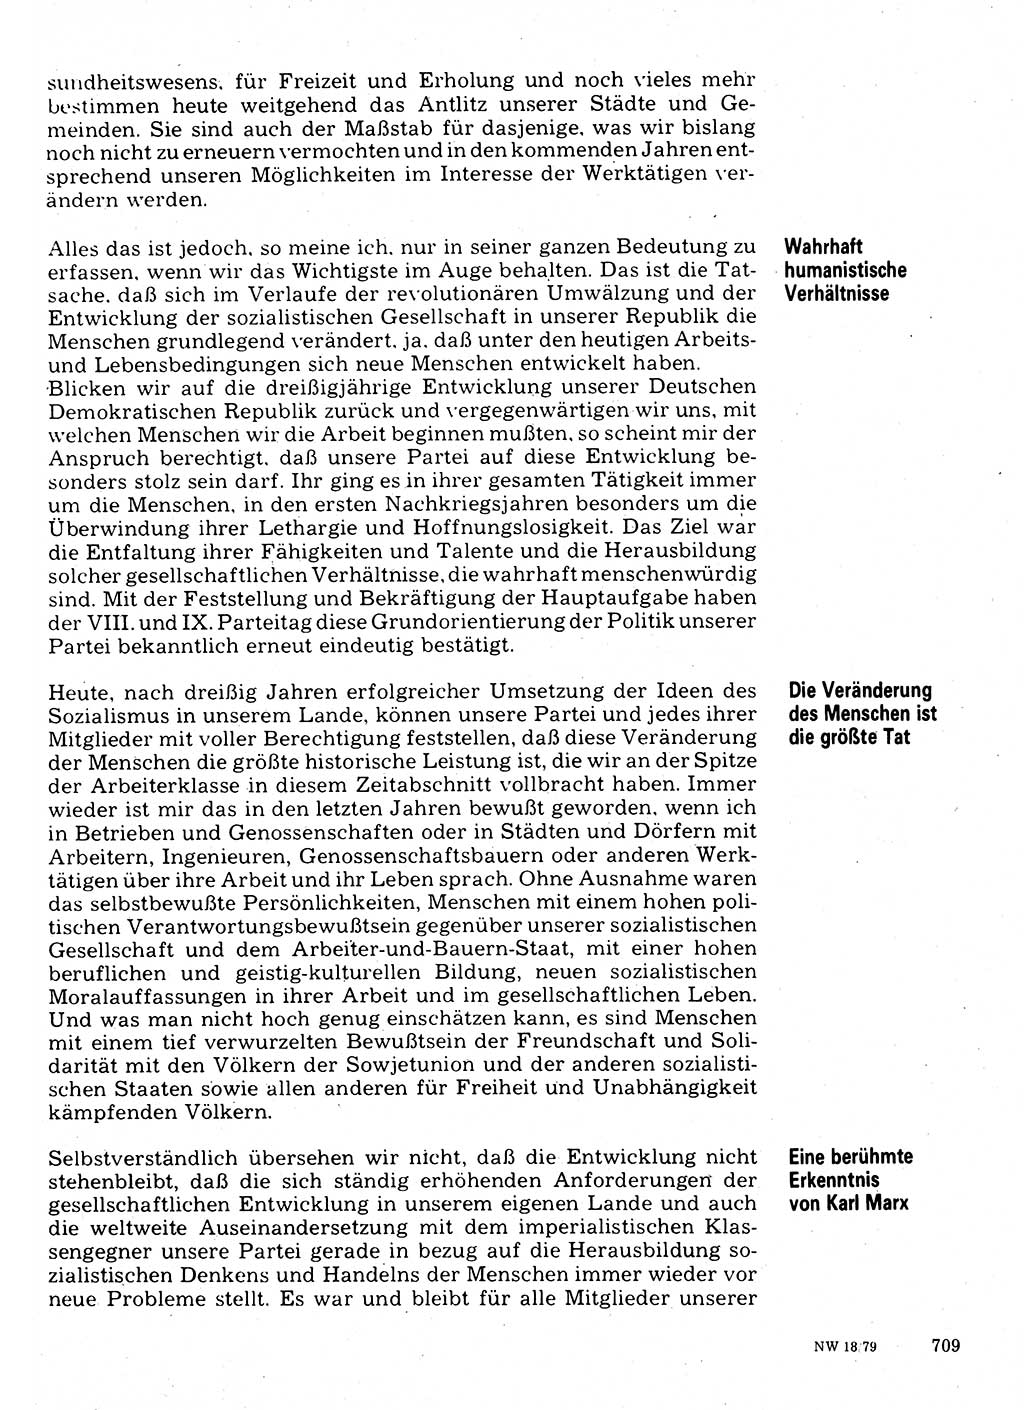 Neuer Weg (NW), Organ des Zentralkomitees (ZK) der SED (Sozialistische Einheitspartei Deutschlands) für Fragen des Parteilebens, 34. Jahrgang [Deutsche Demokratische Republik (DDR)] 1979, Seite 709 (NW ZK SED DDR 1979, S. 709)